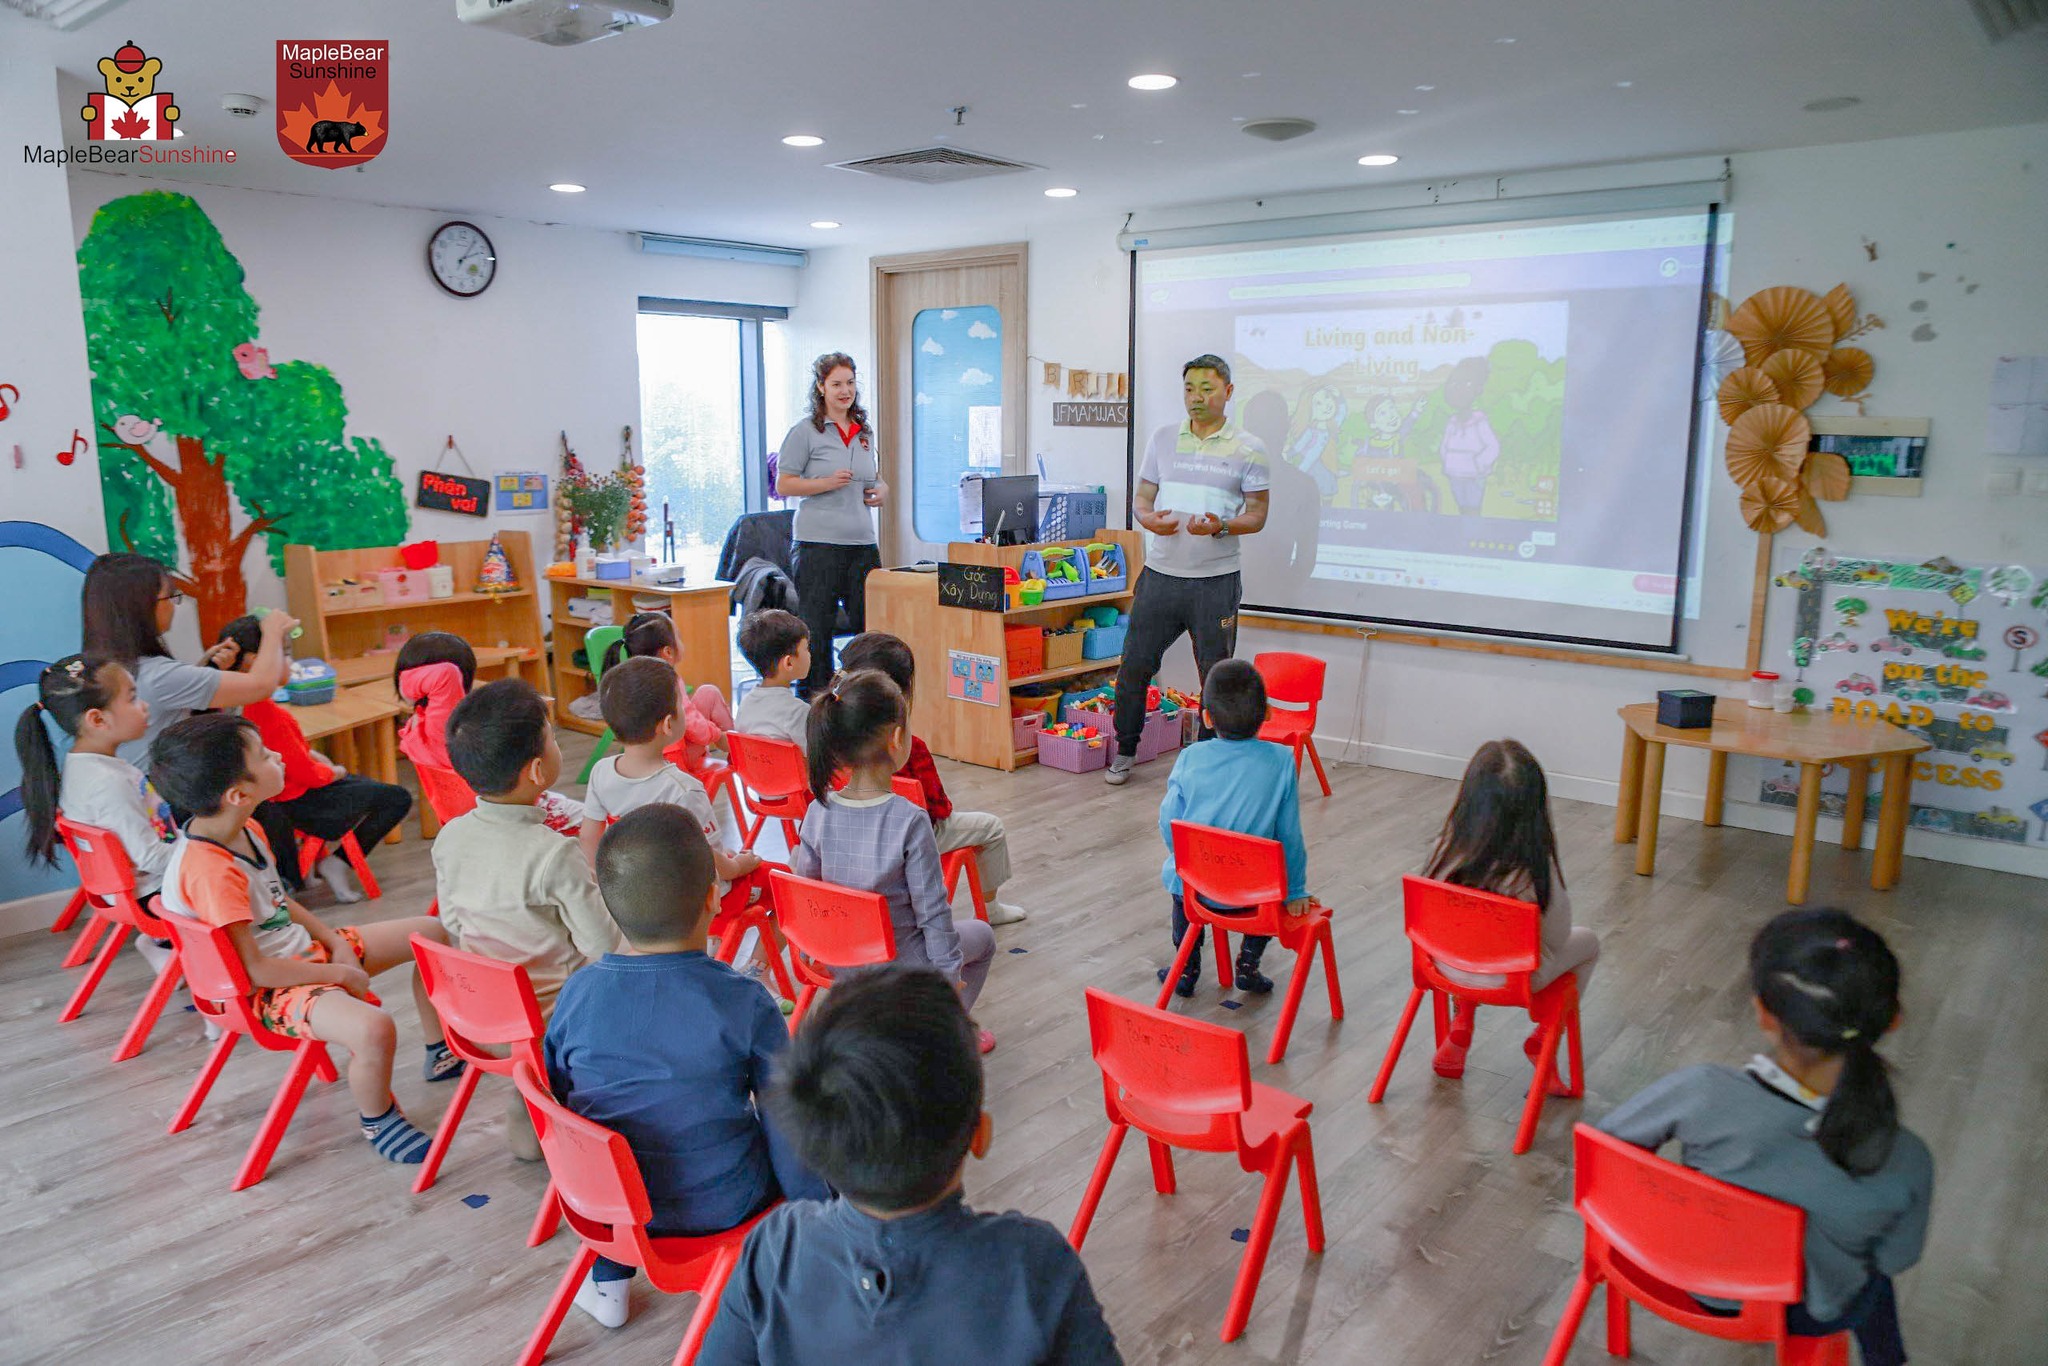 Sunshine Maple Bear Kinder Garten giáo dục theo chương trình toàn cầu